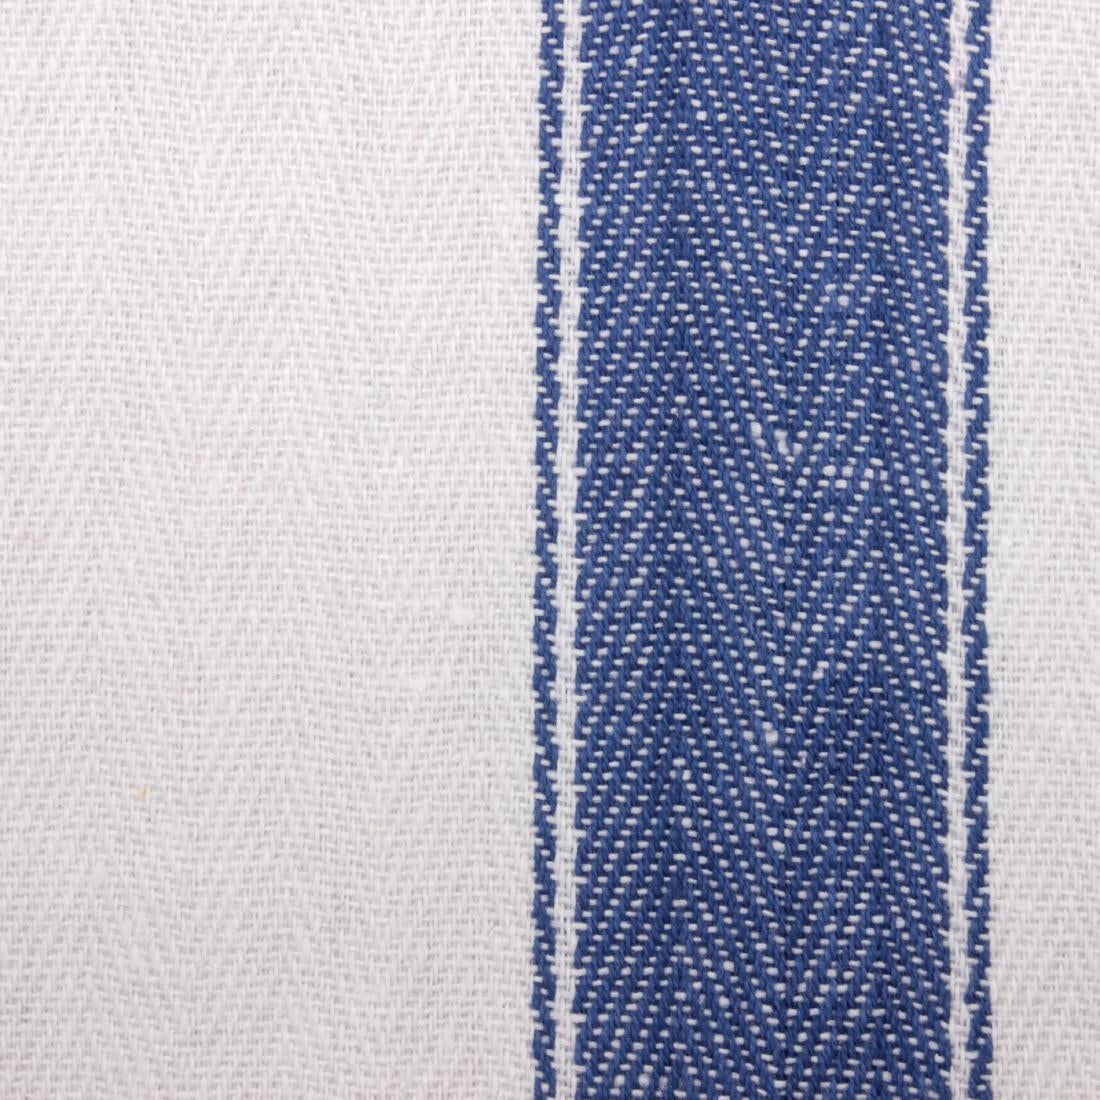 E918 Vogue Heavy Blue Tea Towel